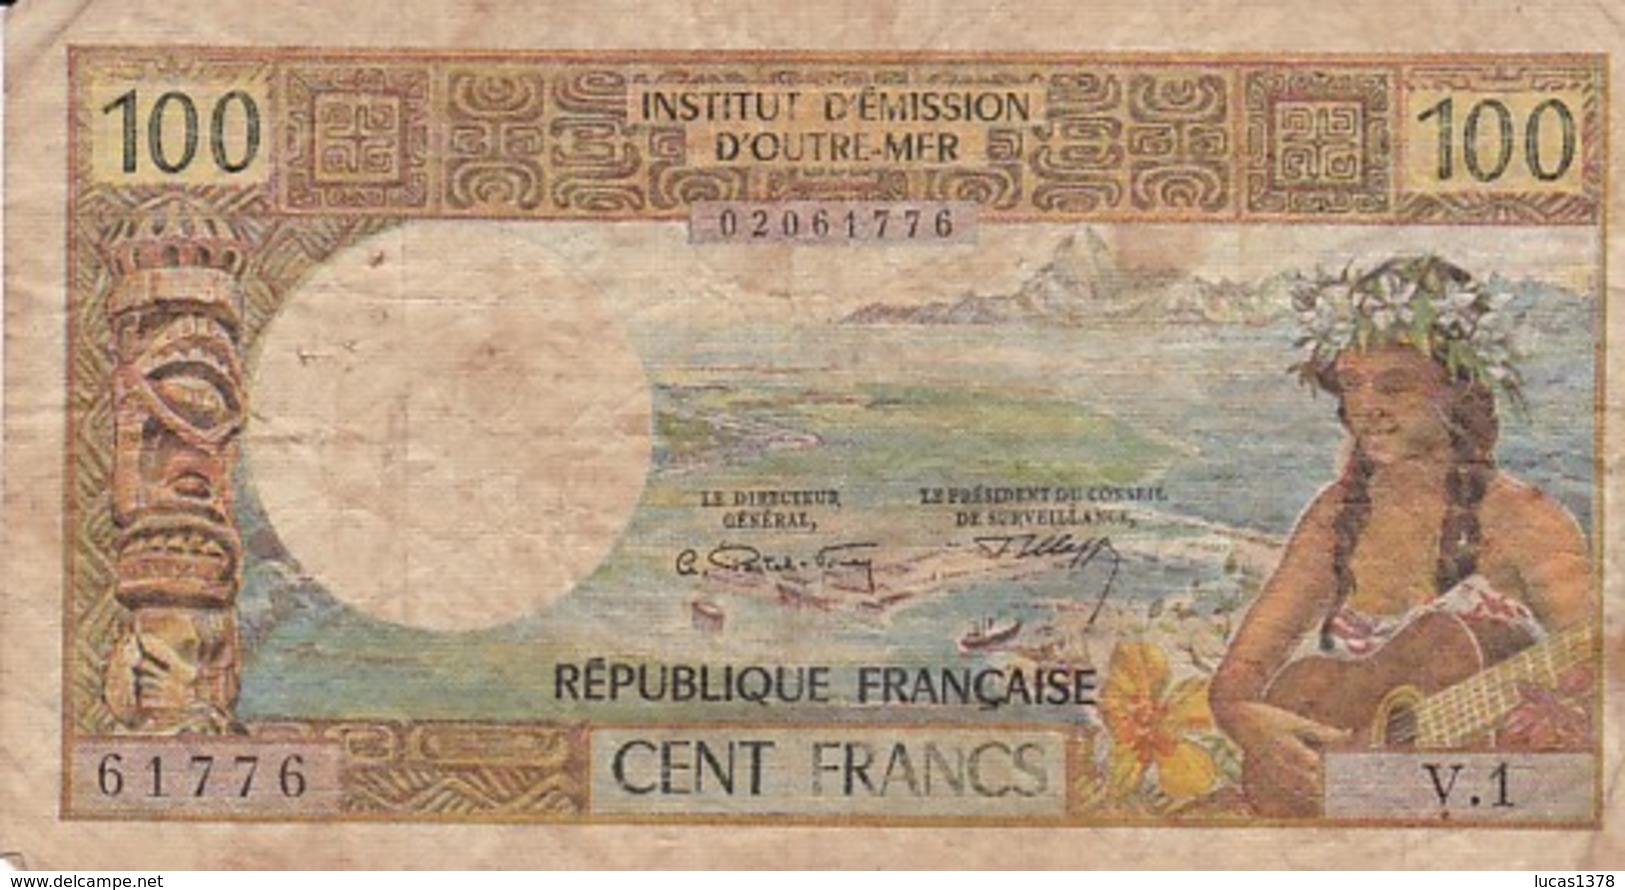 BILLET DE 100 FRANCS INSTITUT D'EMISSION D'OUTRE-MER PAPEETE - Papeete (Polynésie Française 1914-1985)